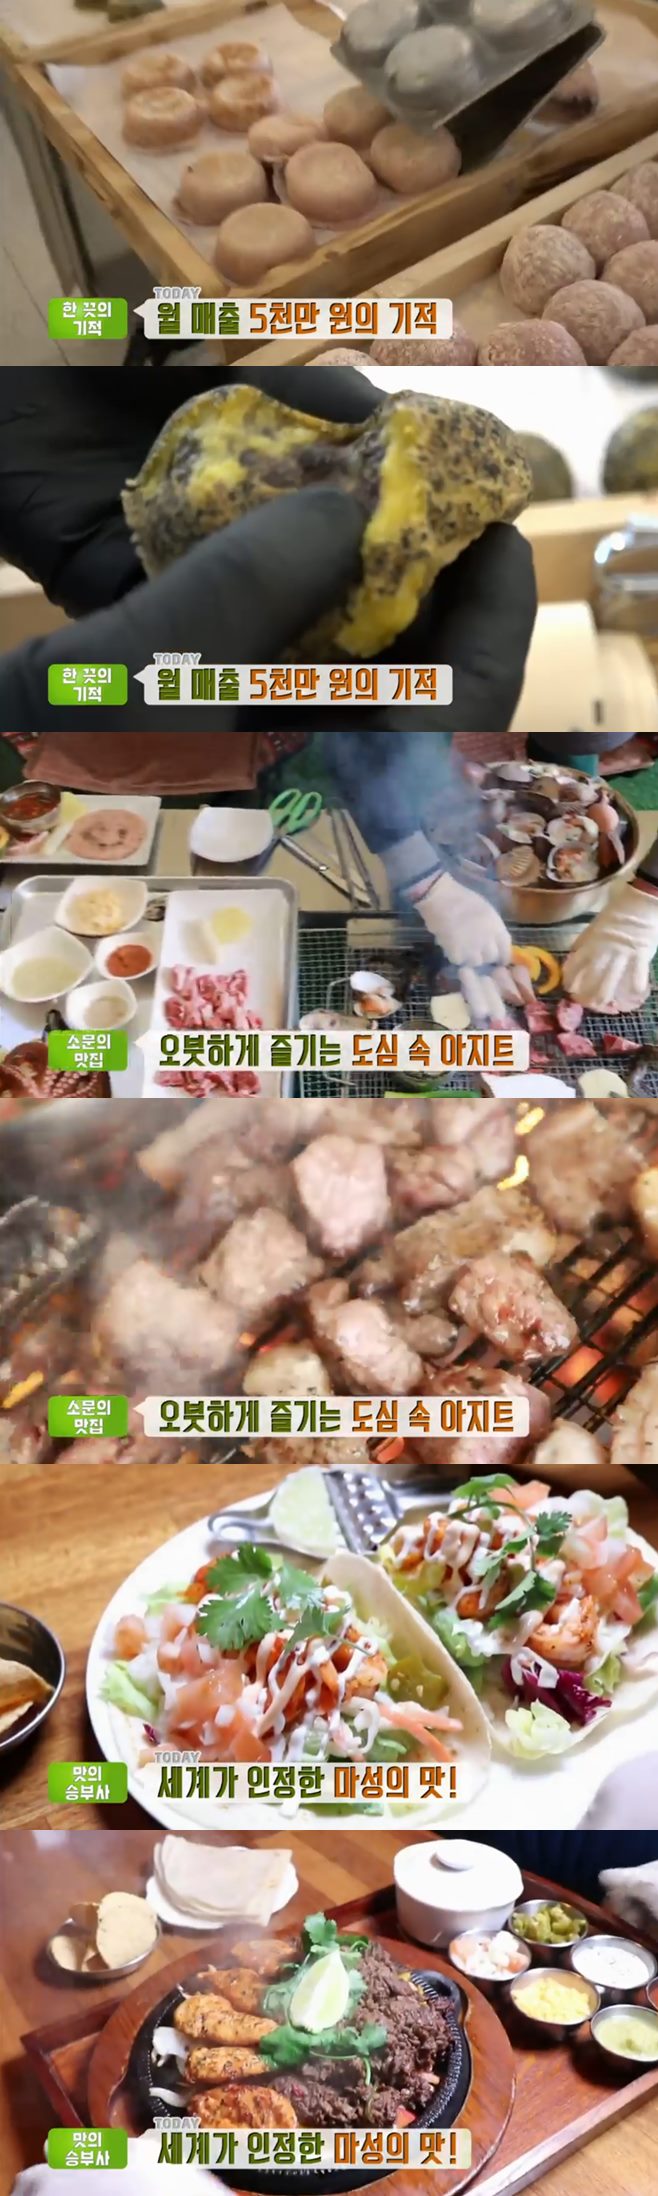 ‘생방송투데이’ 샌드위치(빠숑숑)+리후캠핑식당+맛의승부사 울랄라TACOS+구운찹쌀떡 맛집